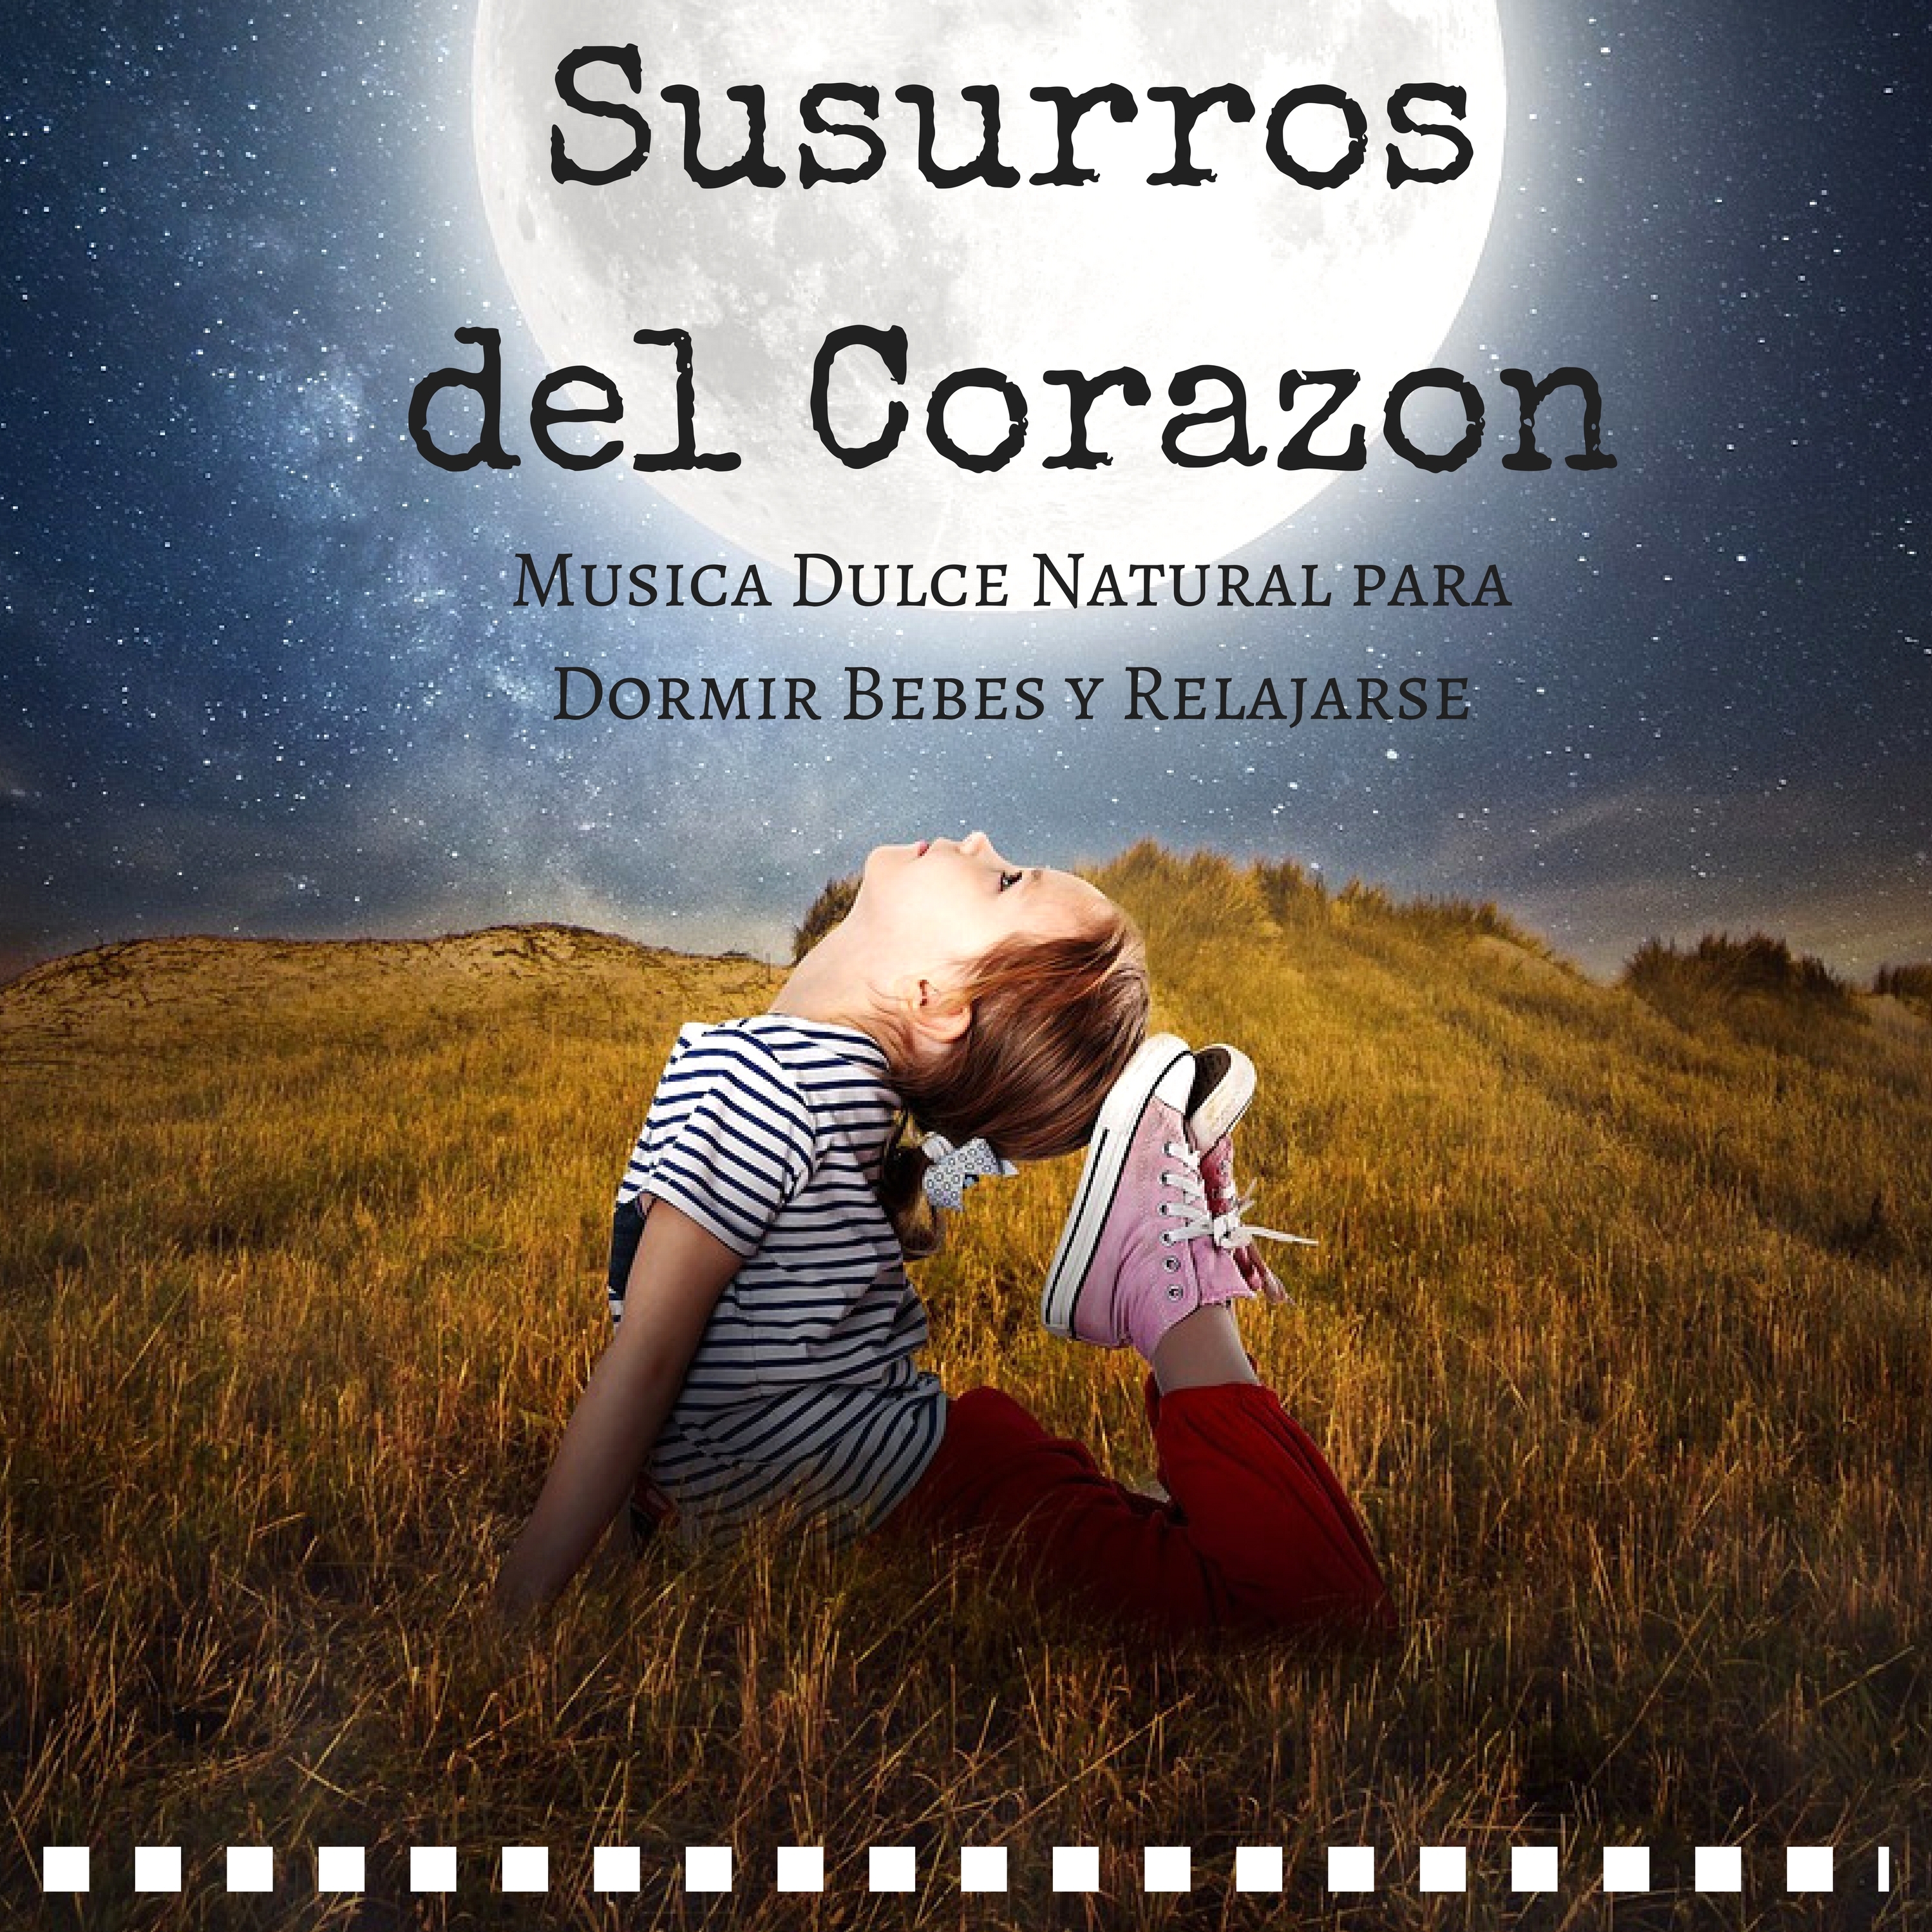 Susurros del Corazon: Musica Dulce Natural para Dormir Bebes y Relajarse